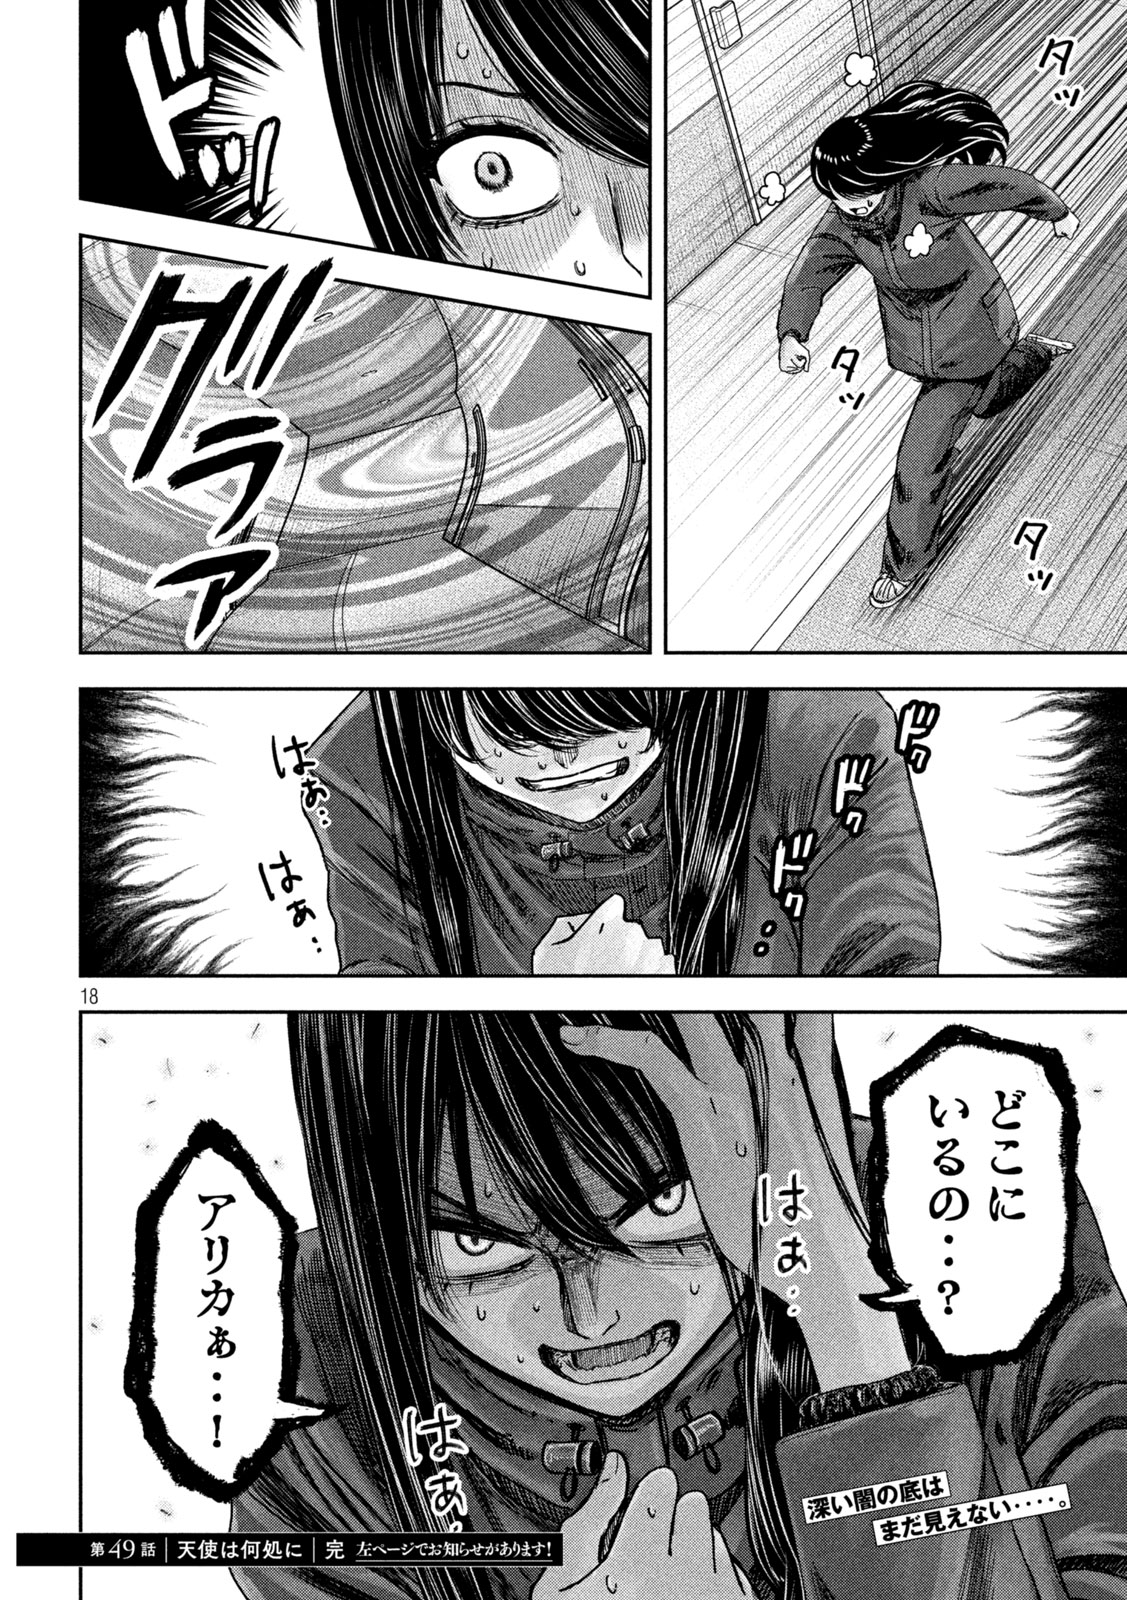 Watashi no Arika - Chapter 49 - Page 18